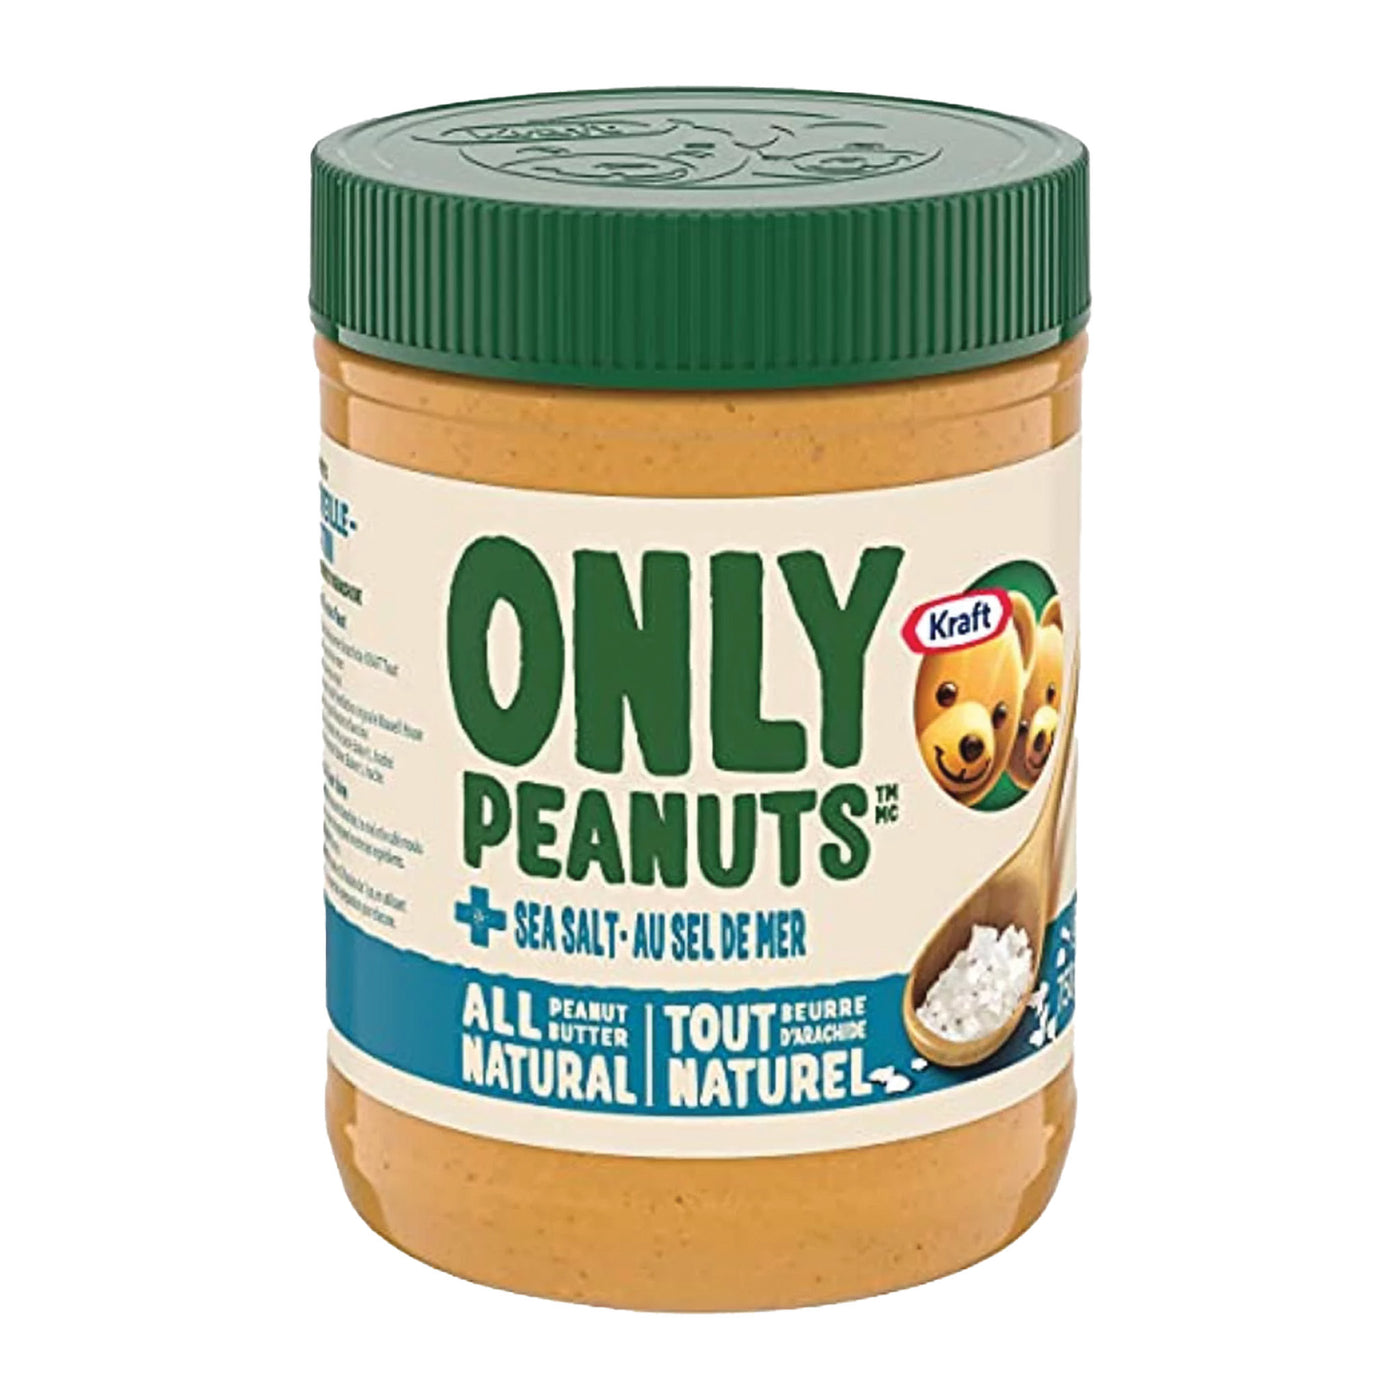 All Natural Sea Salt Peanut Butter